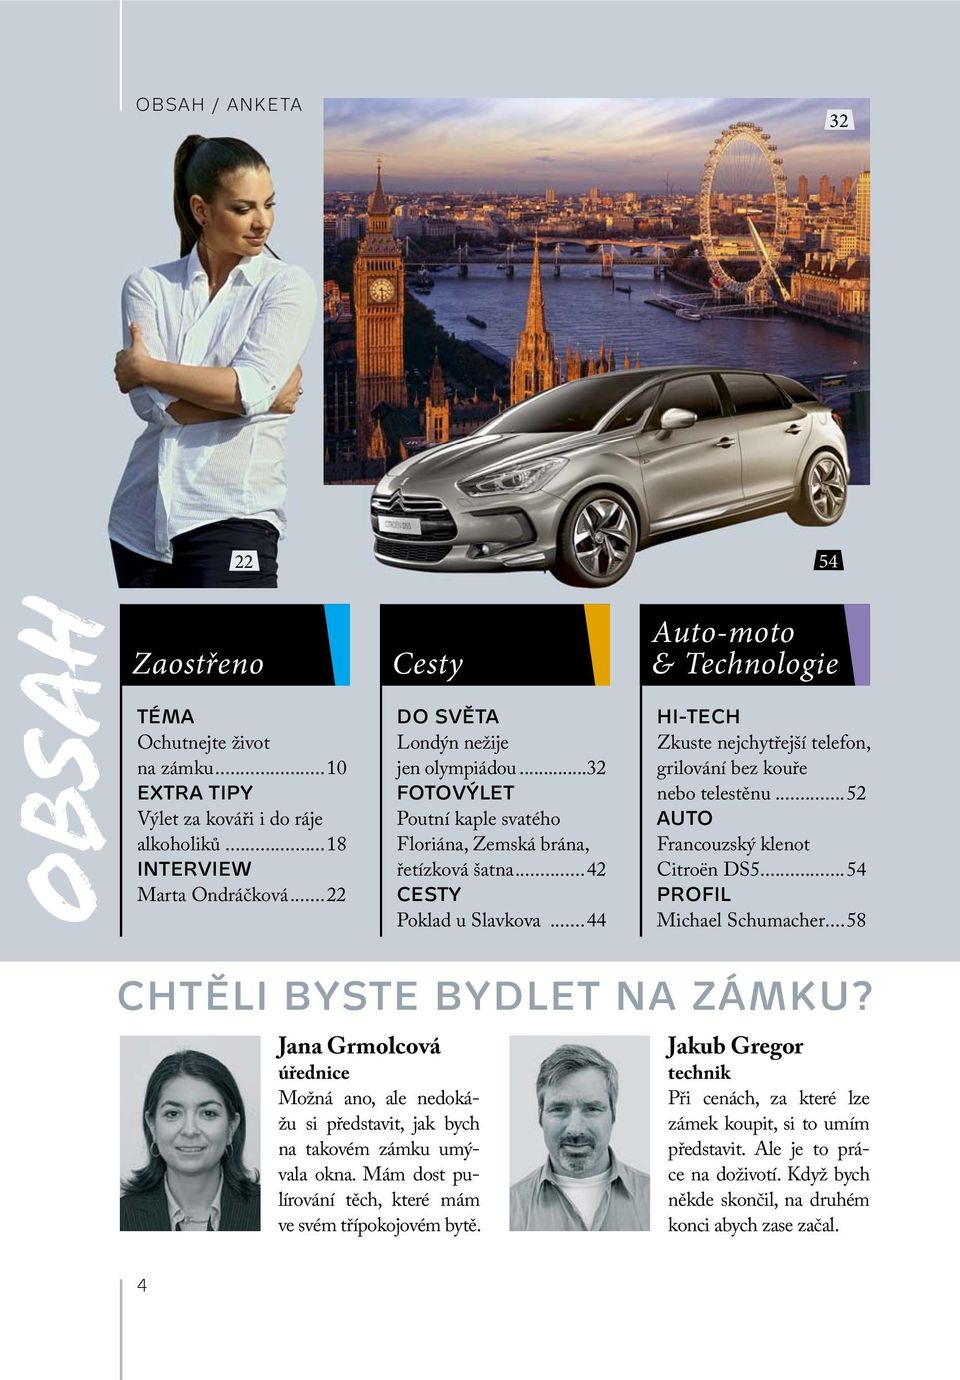 ..44 Auto-moto & Technologie HI-TECH Zkuste nejchytřejší telefon, grilování bez kouře nebo telestěnu...52 AUTO Francouzský klenot Citroën DS5...54 PROFIL Michael Schumacher.